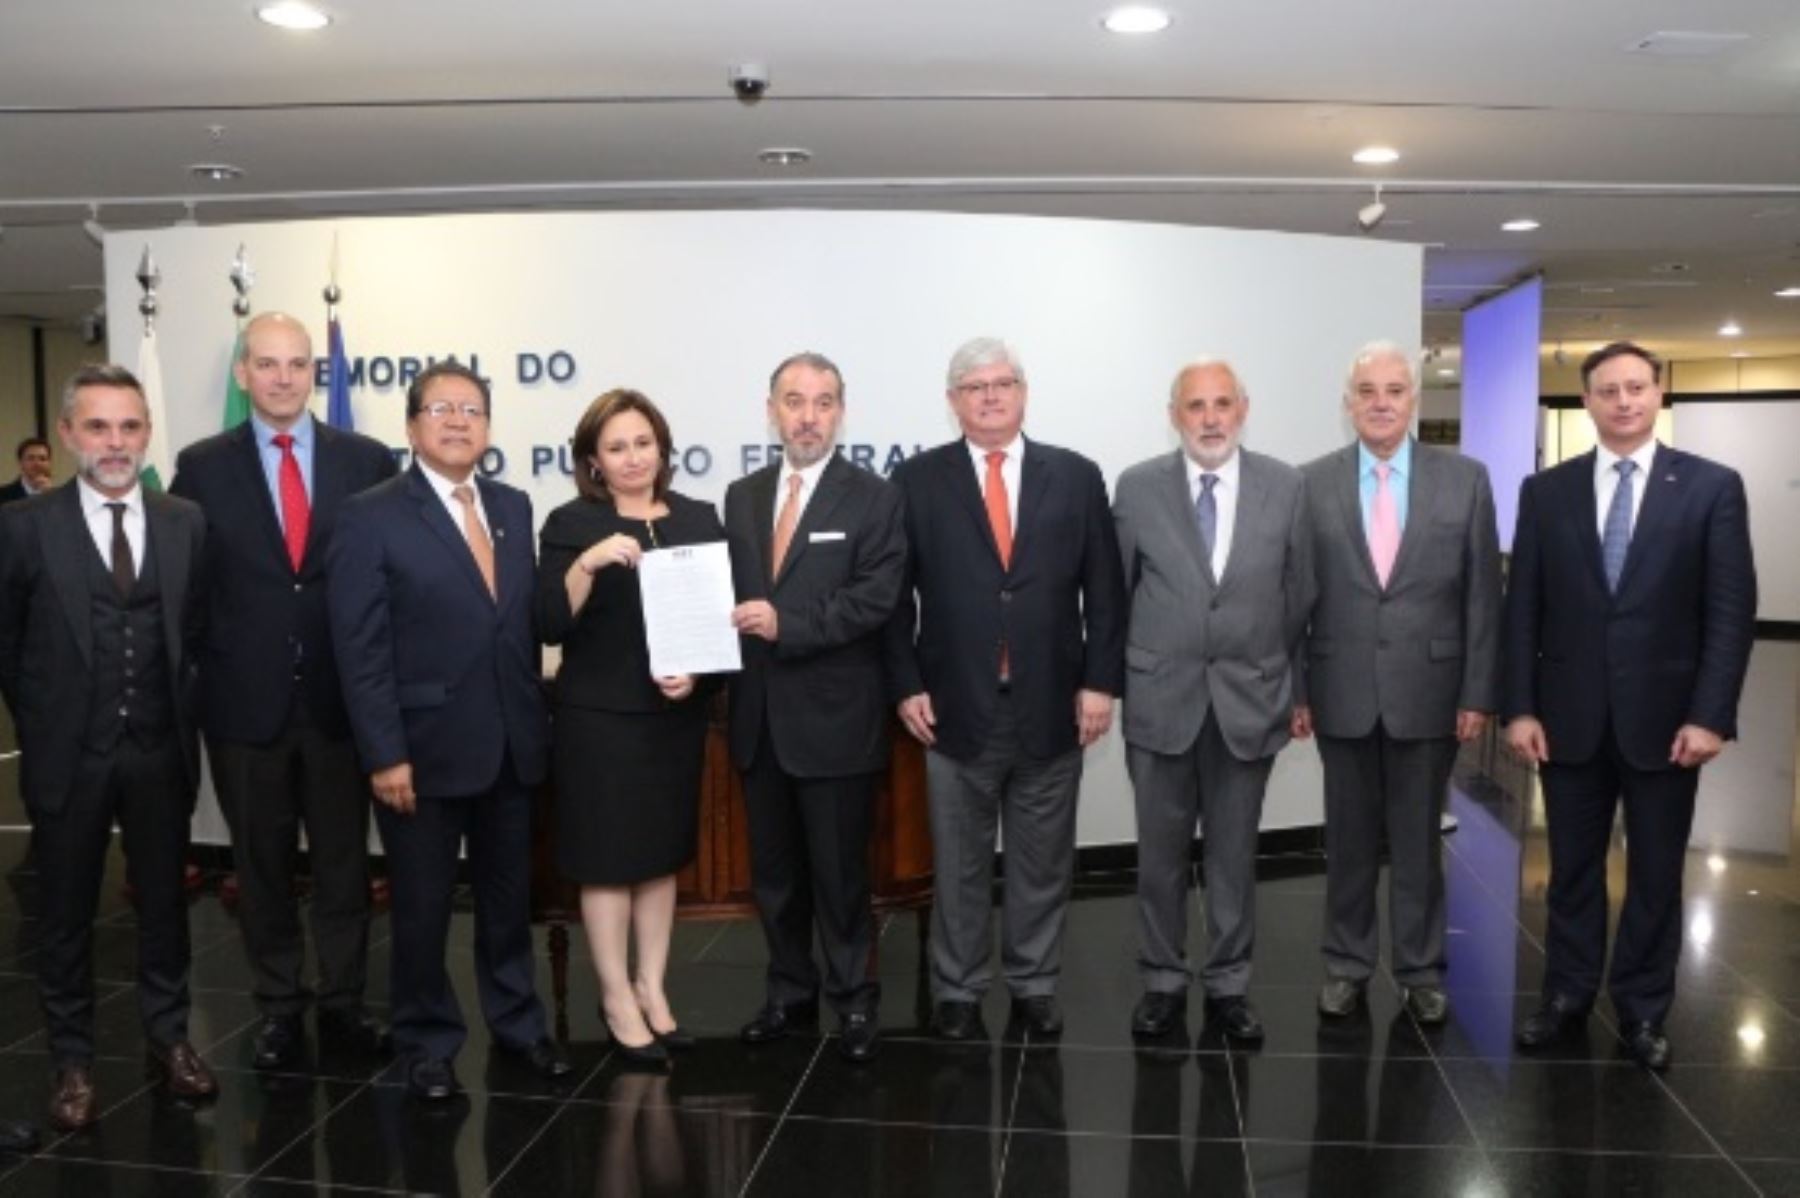 Fiscales de la región se reúnen en Brasil para coordinar cooperación en caso Odebrecht. @FiscaliaEcuador